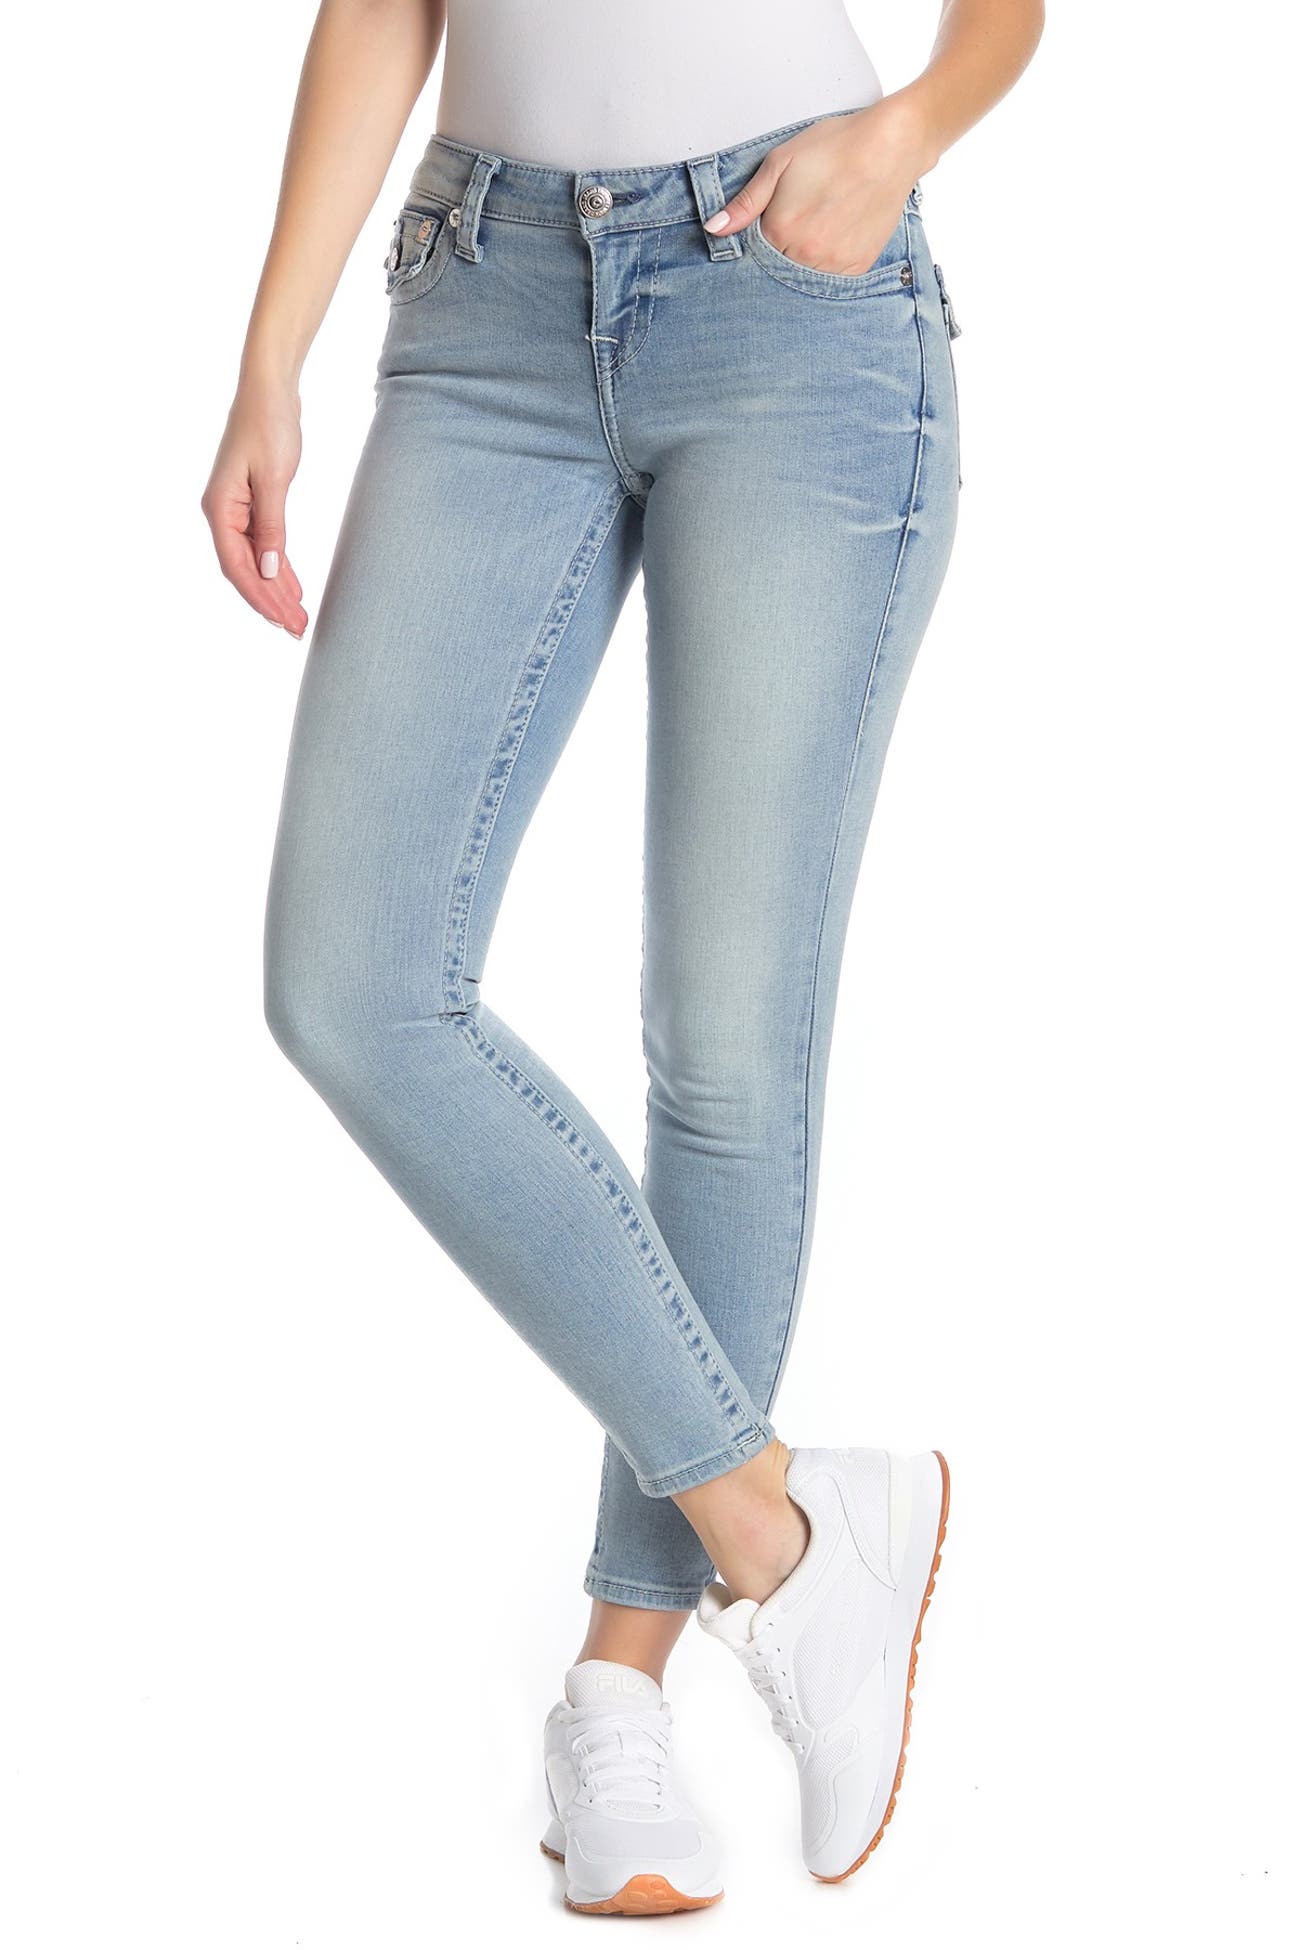 True Religion Halle Flap Pocket Mid Rise Super Skinny Jeans Nordstrom Rack